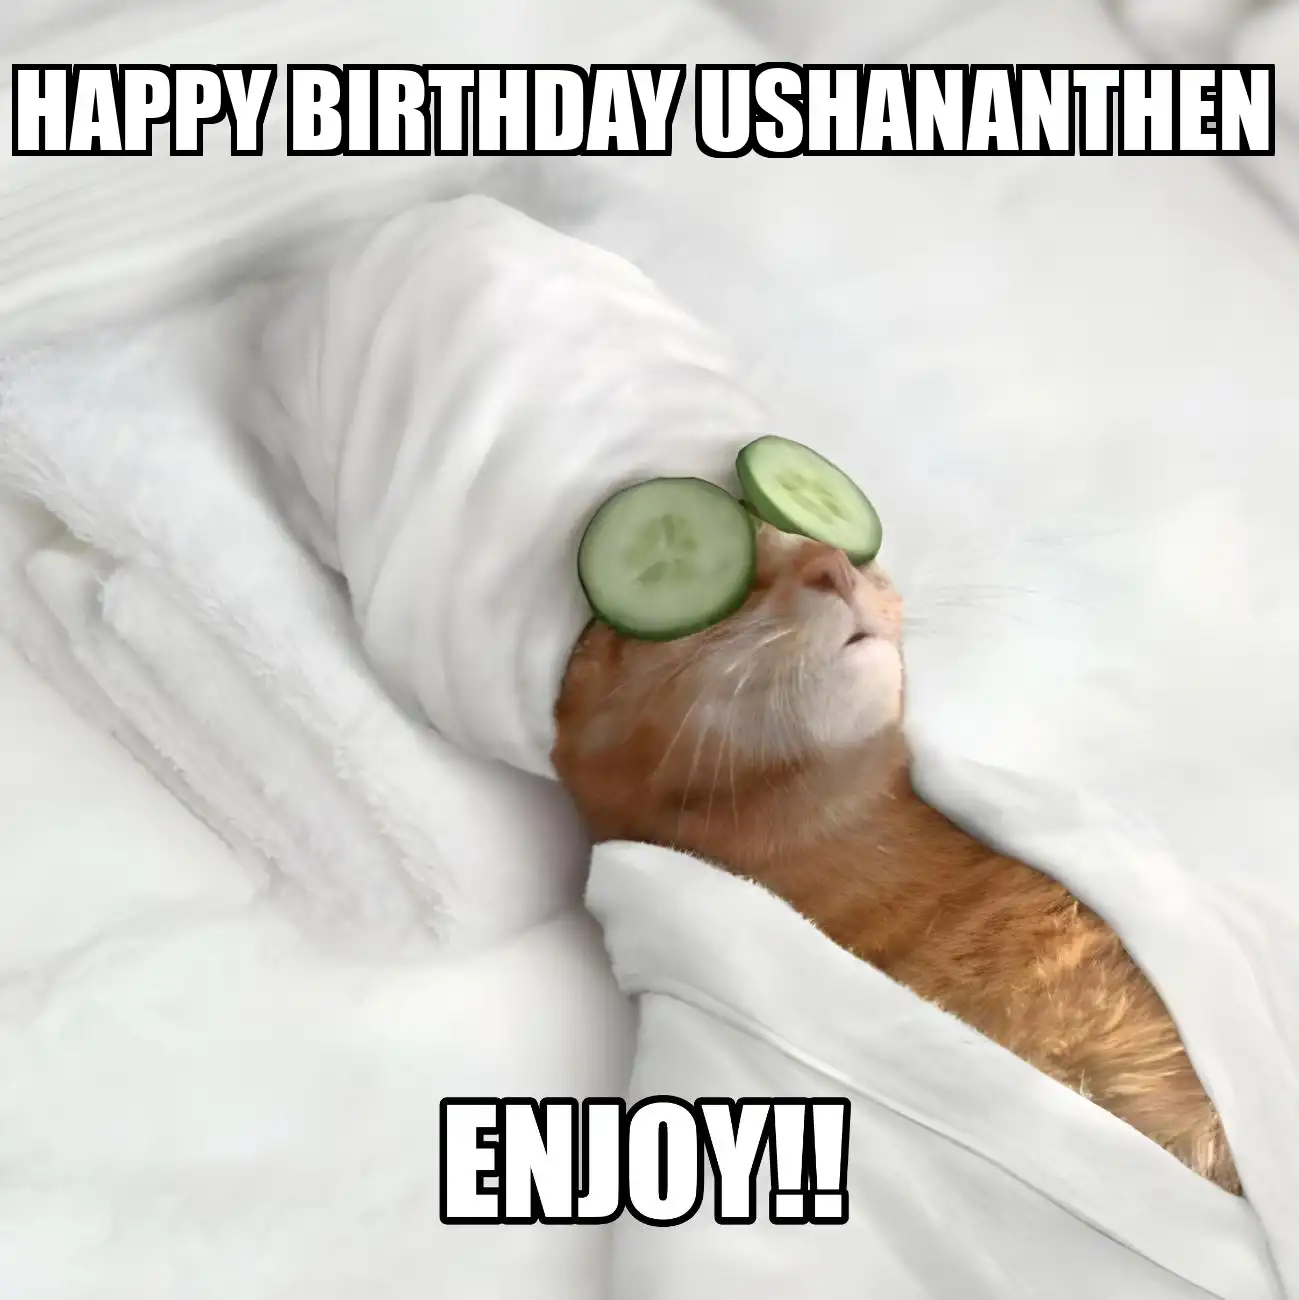 Happy Birthday Ushananthen Enjoy Cat Meme